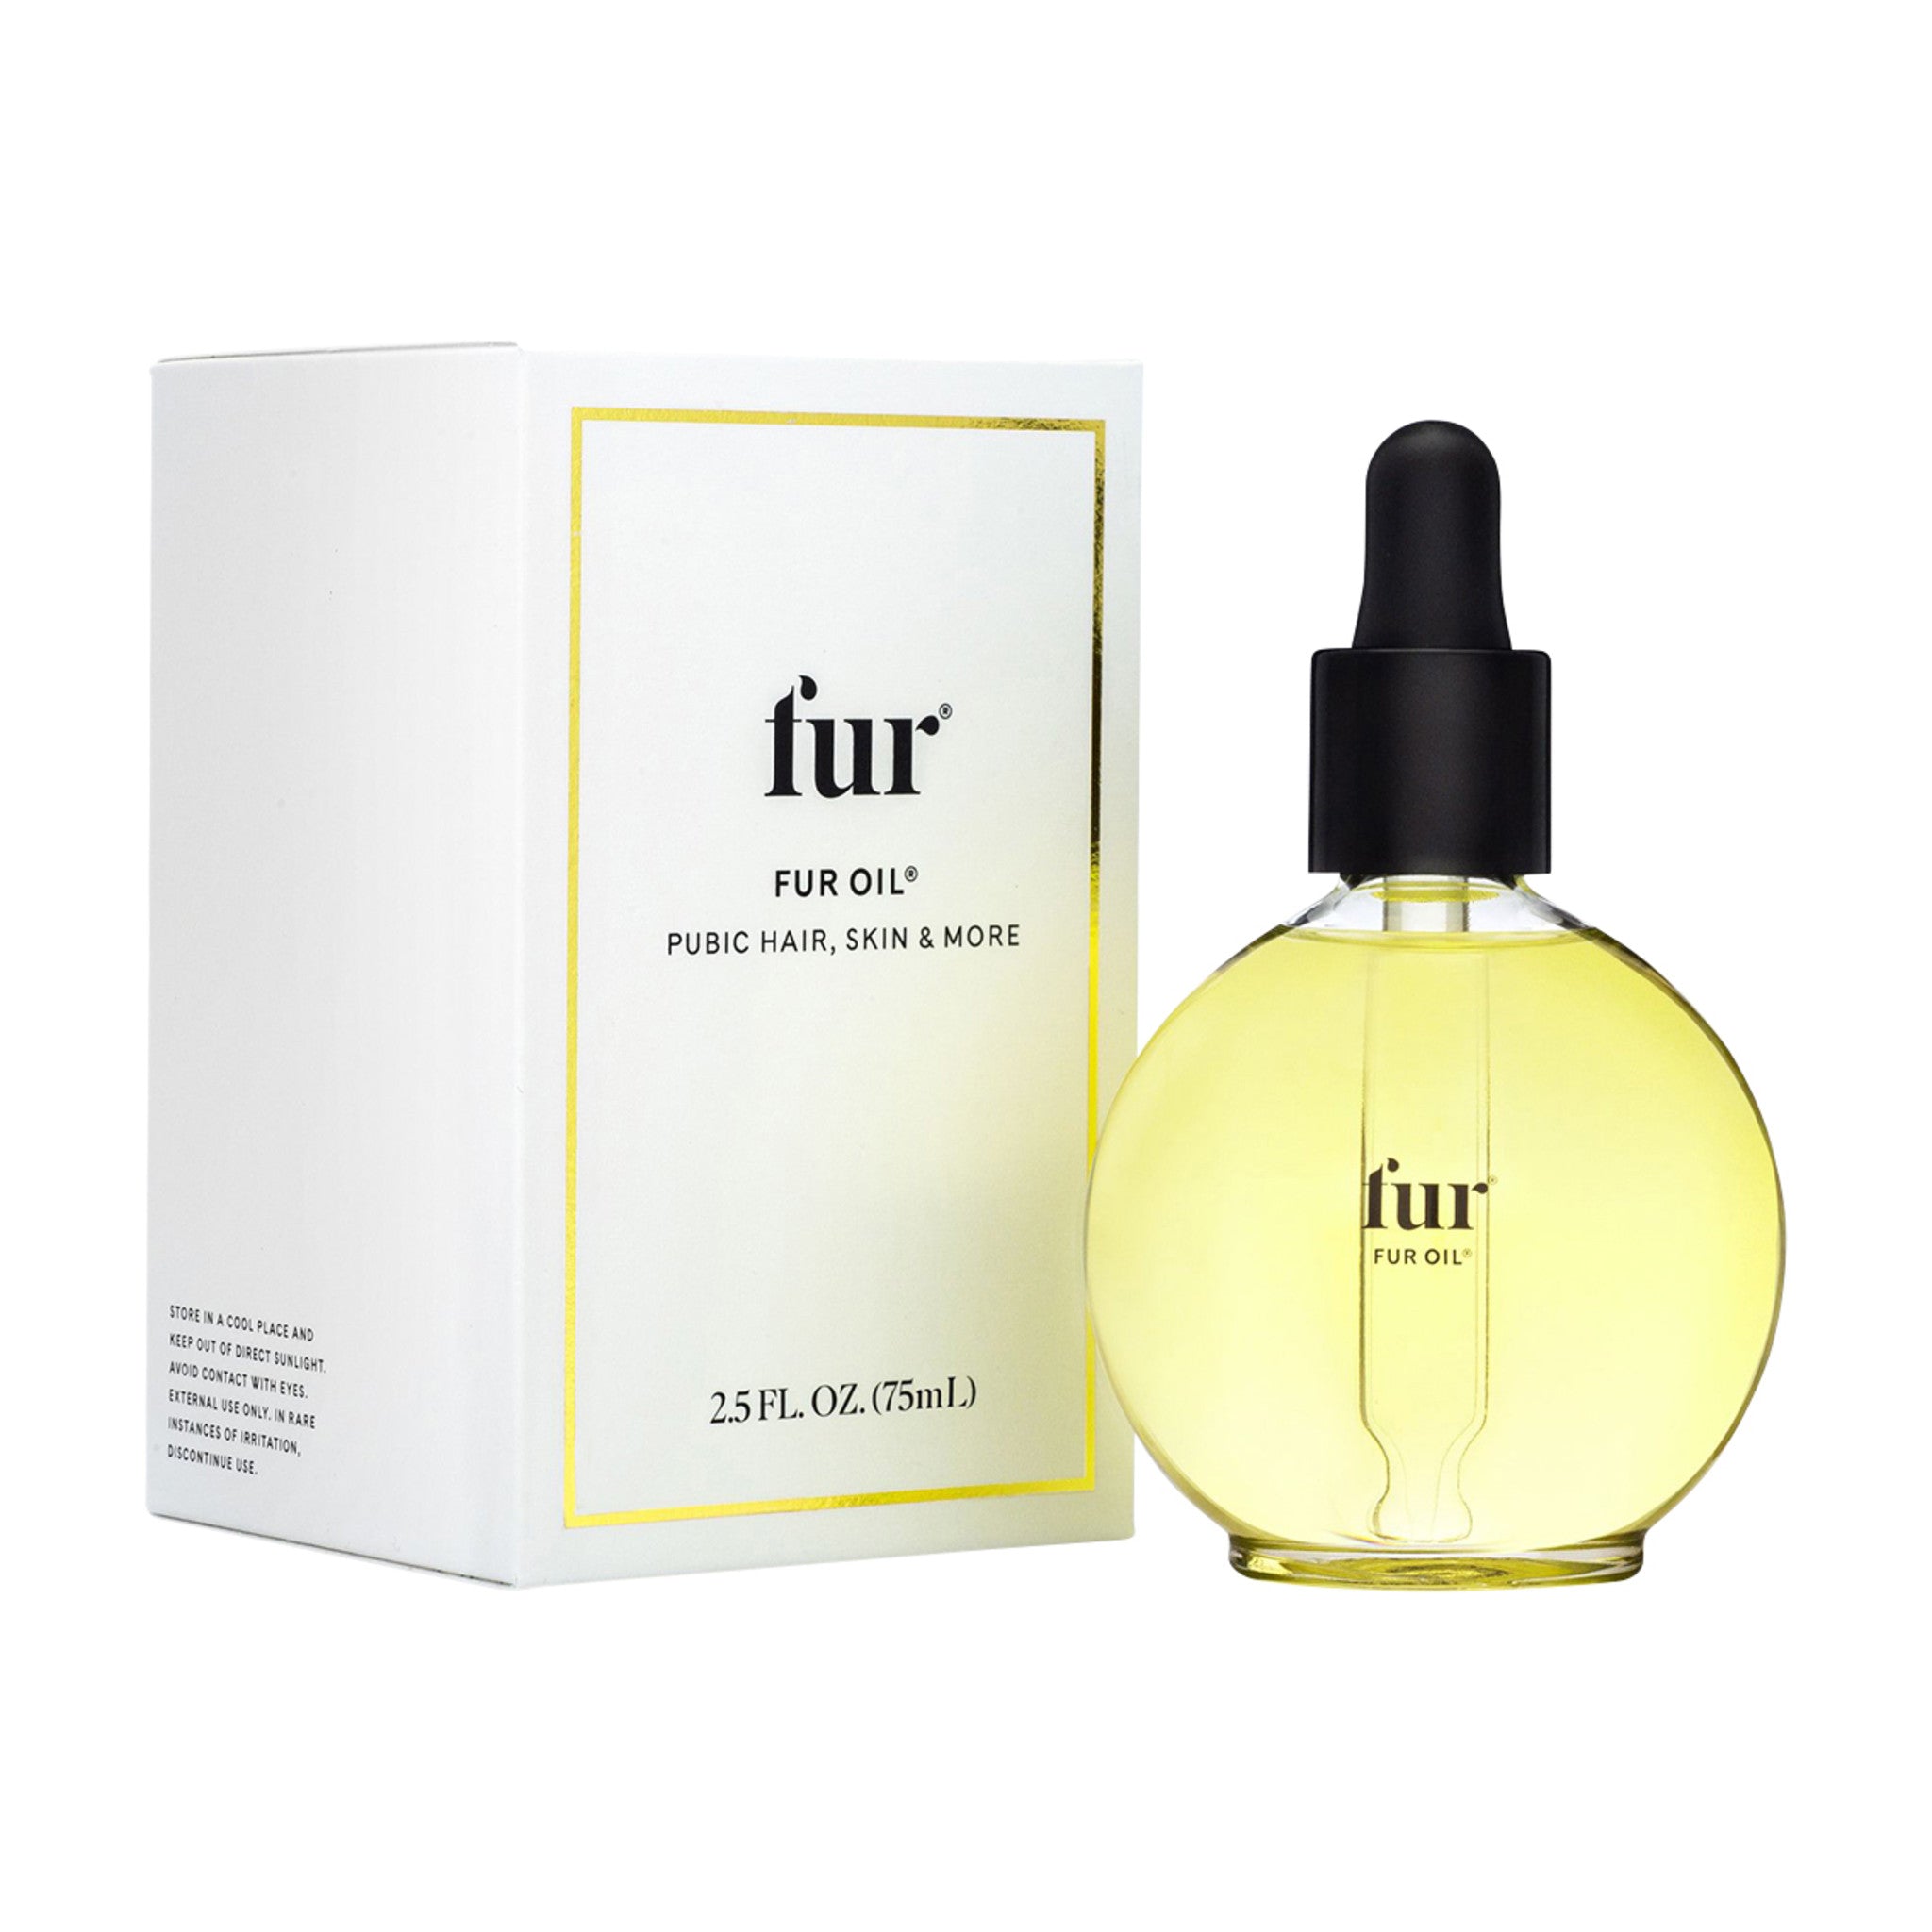 Fur Fur Oil main image.